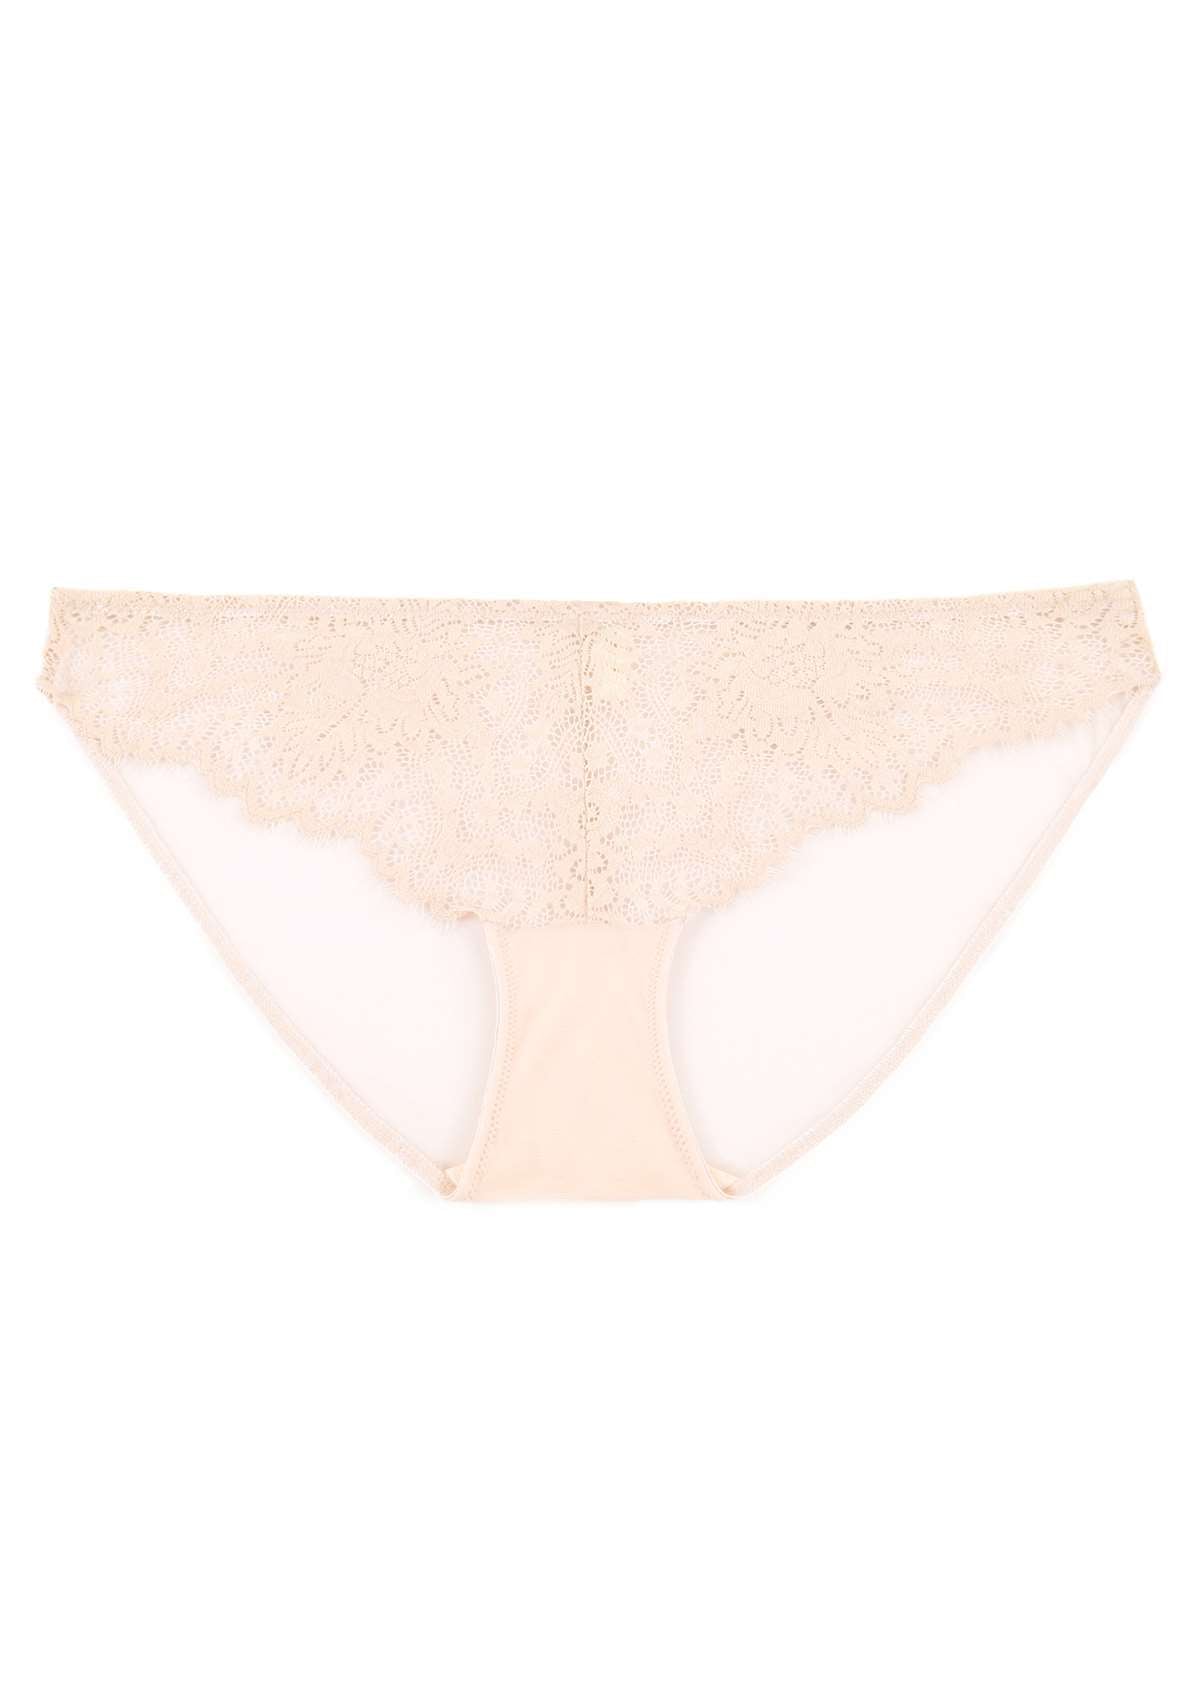 HSIA Sunflower Exquisite Lace Bikini Underwear - L / White